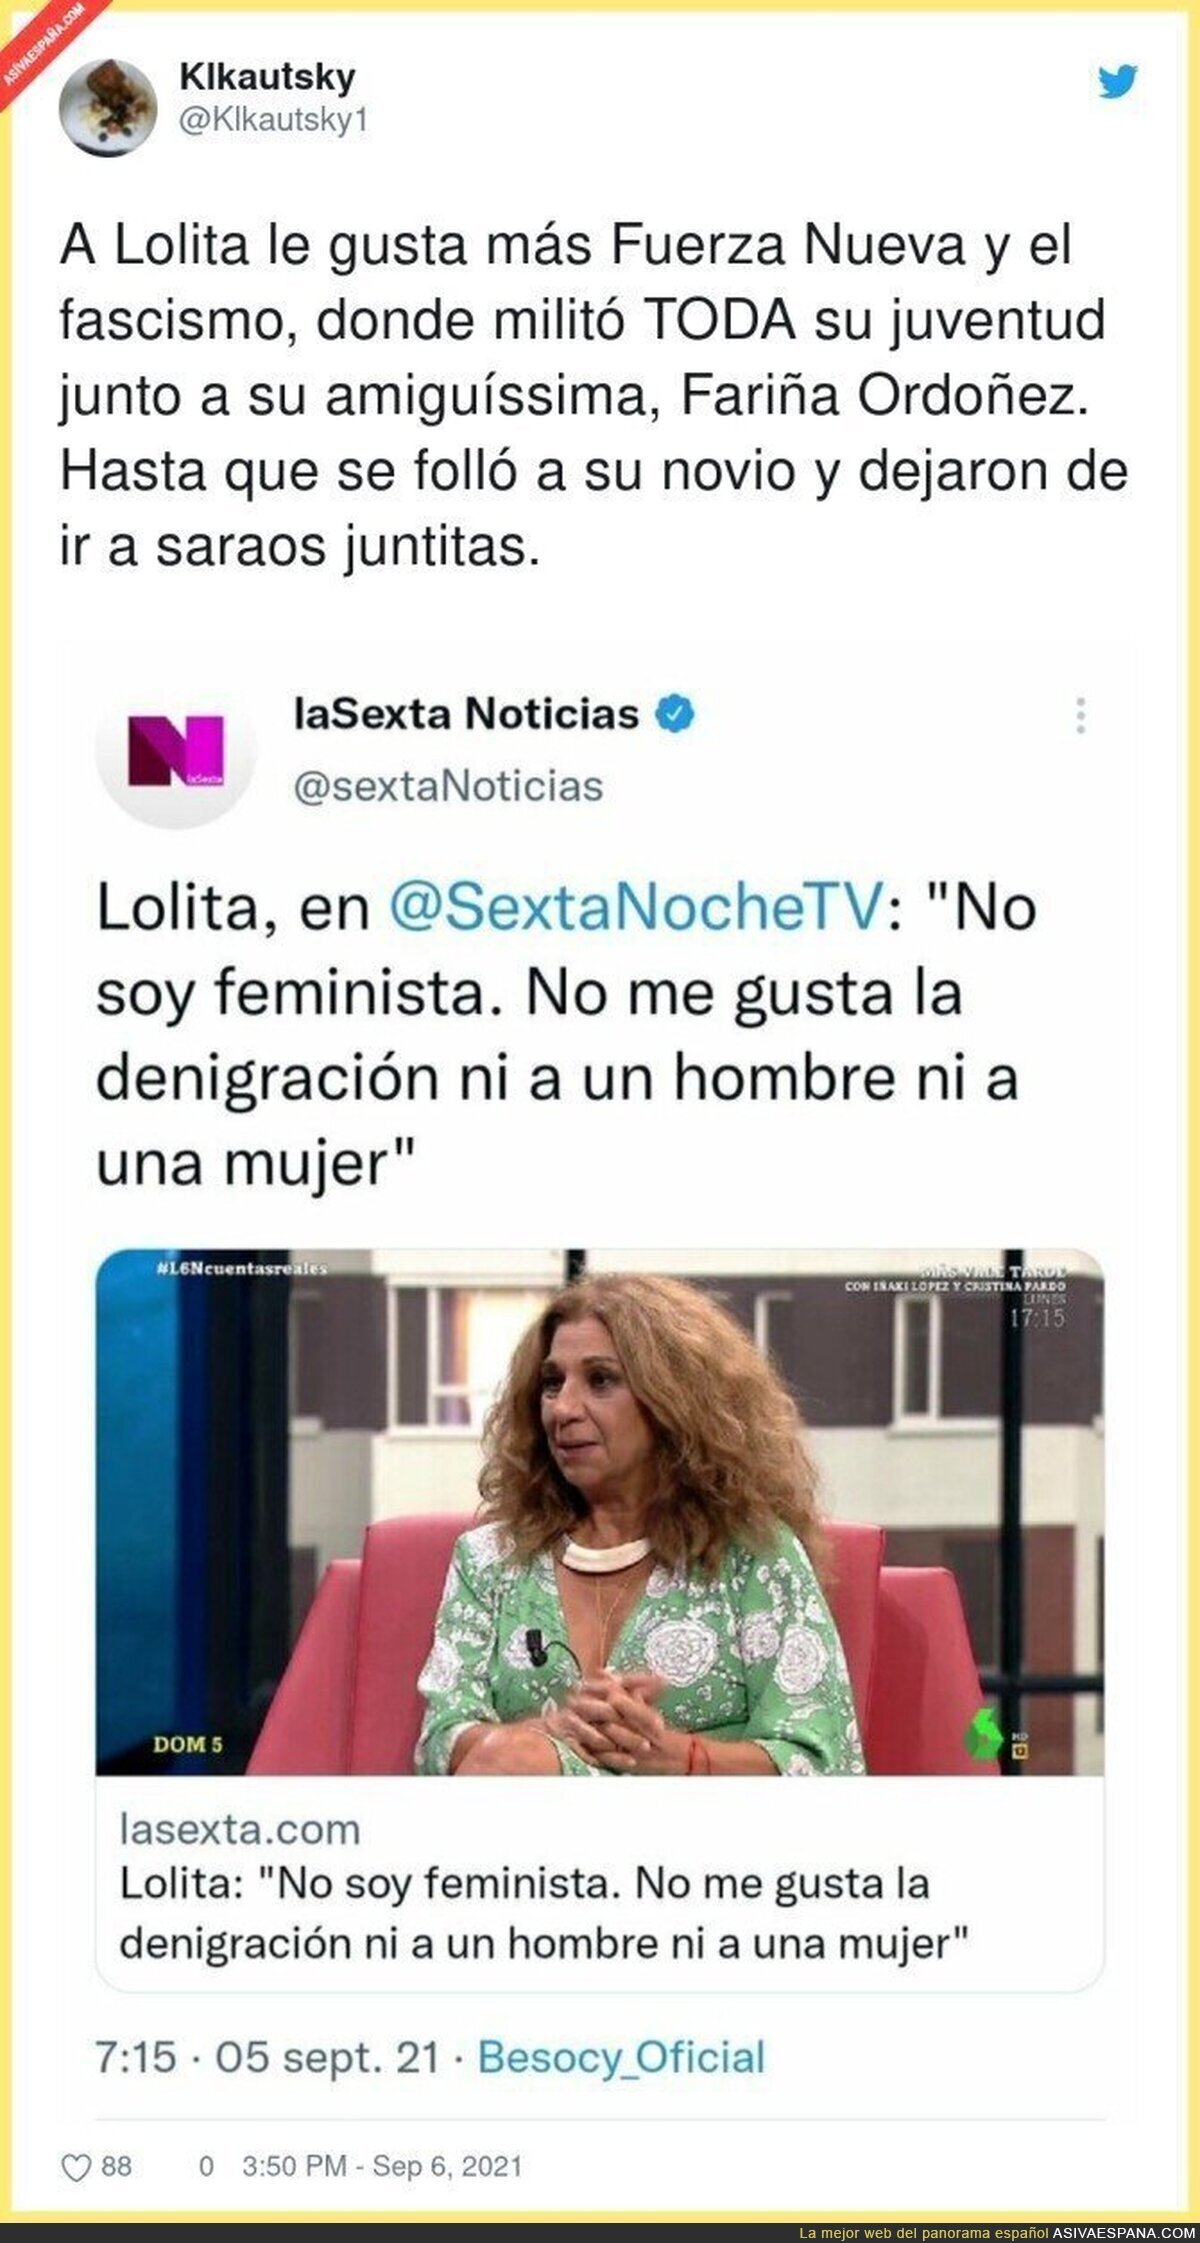 La polémica ideología de Lolita Flores